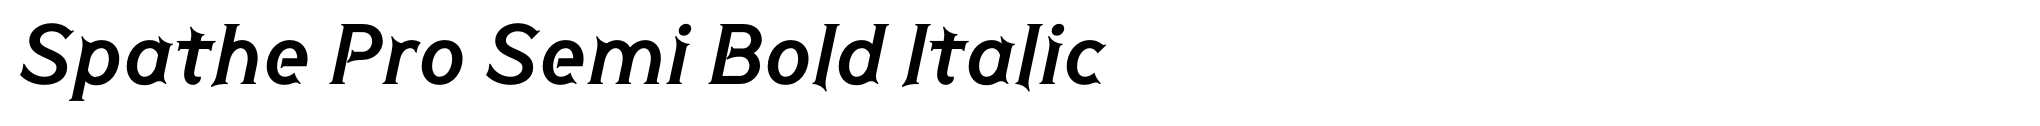 Spathe Pro Semi Bold Italic image